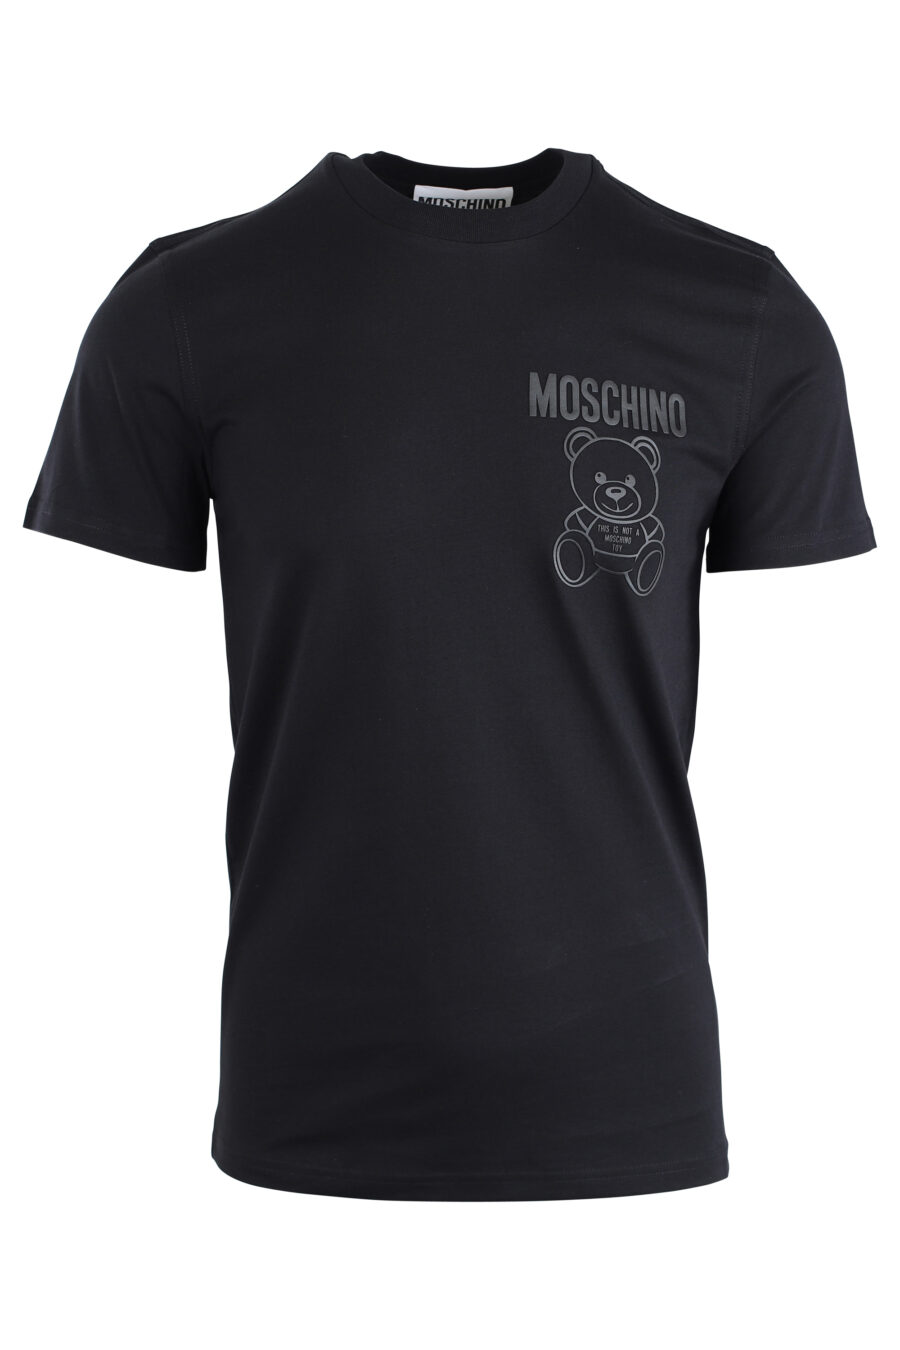 Schwarzes T-Shirt mit einfarbigem Bären-Minilogo - IMG 1669